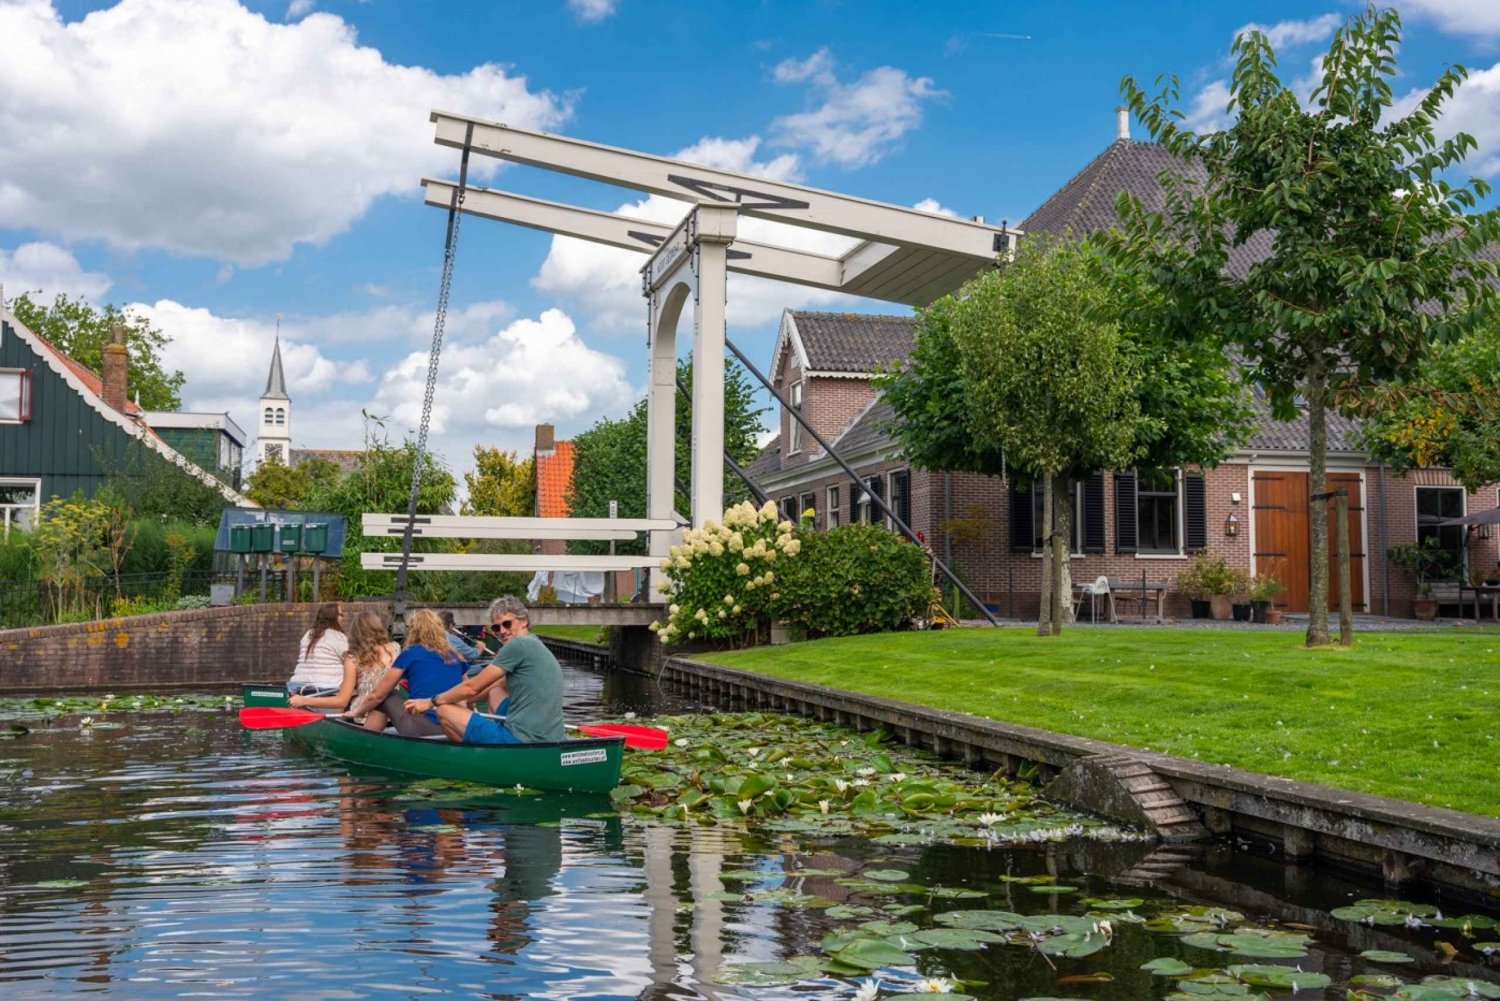 Gita guidata in canoa di 5 ore ad Amsterdam nelle zone umide